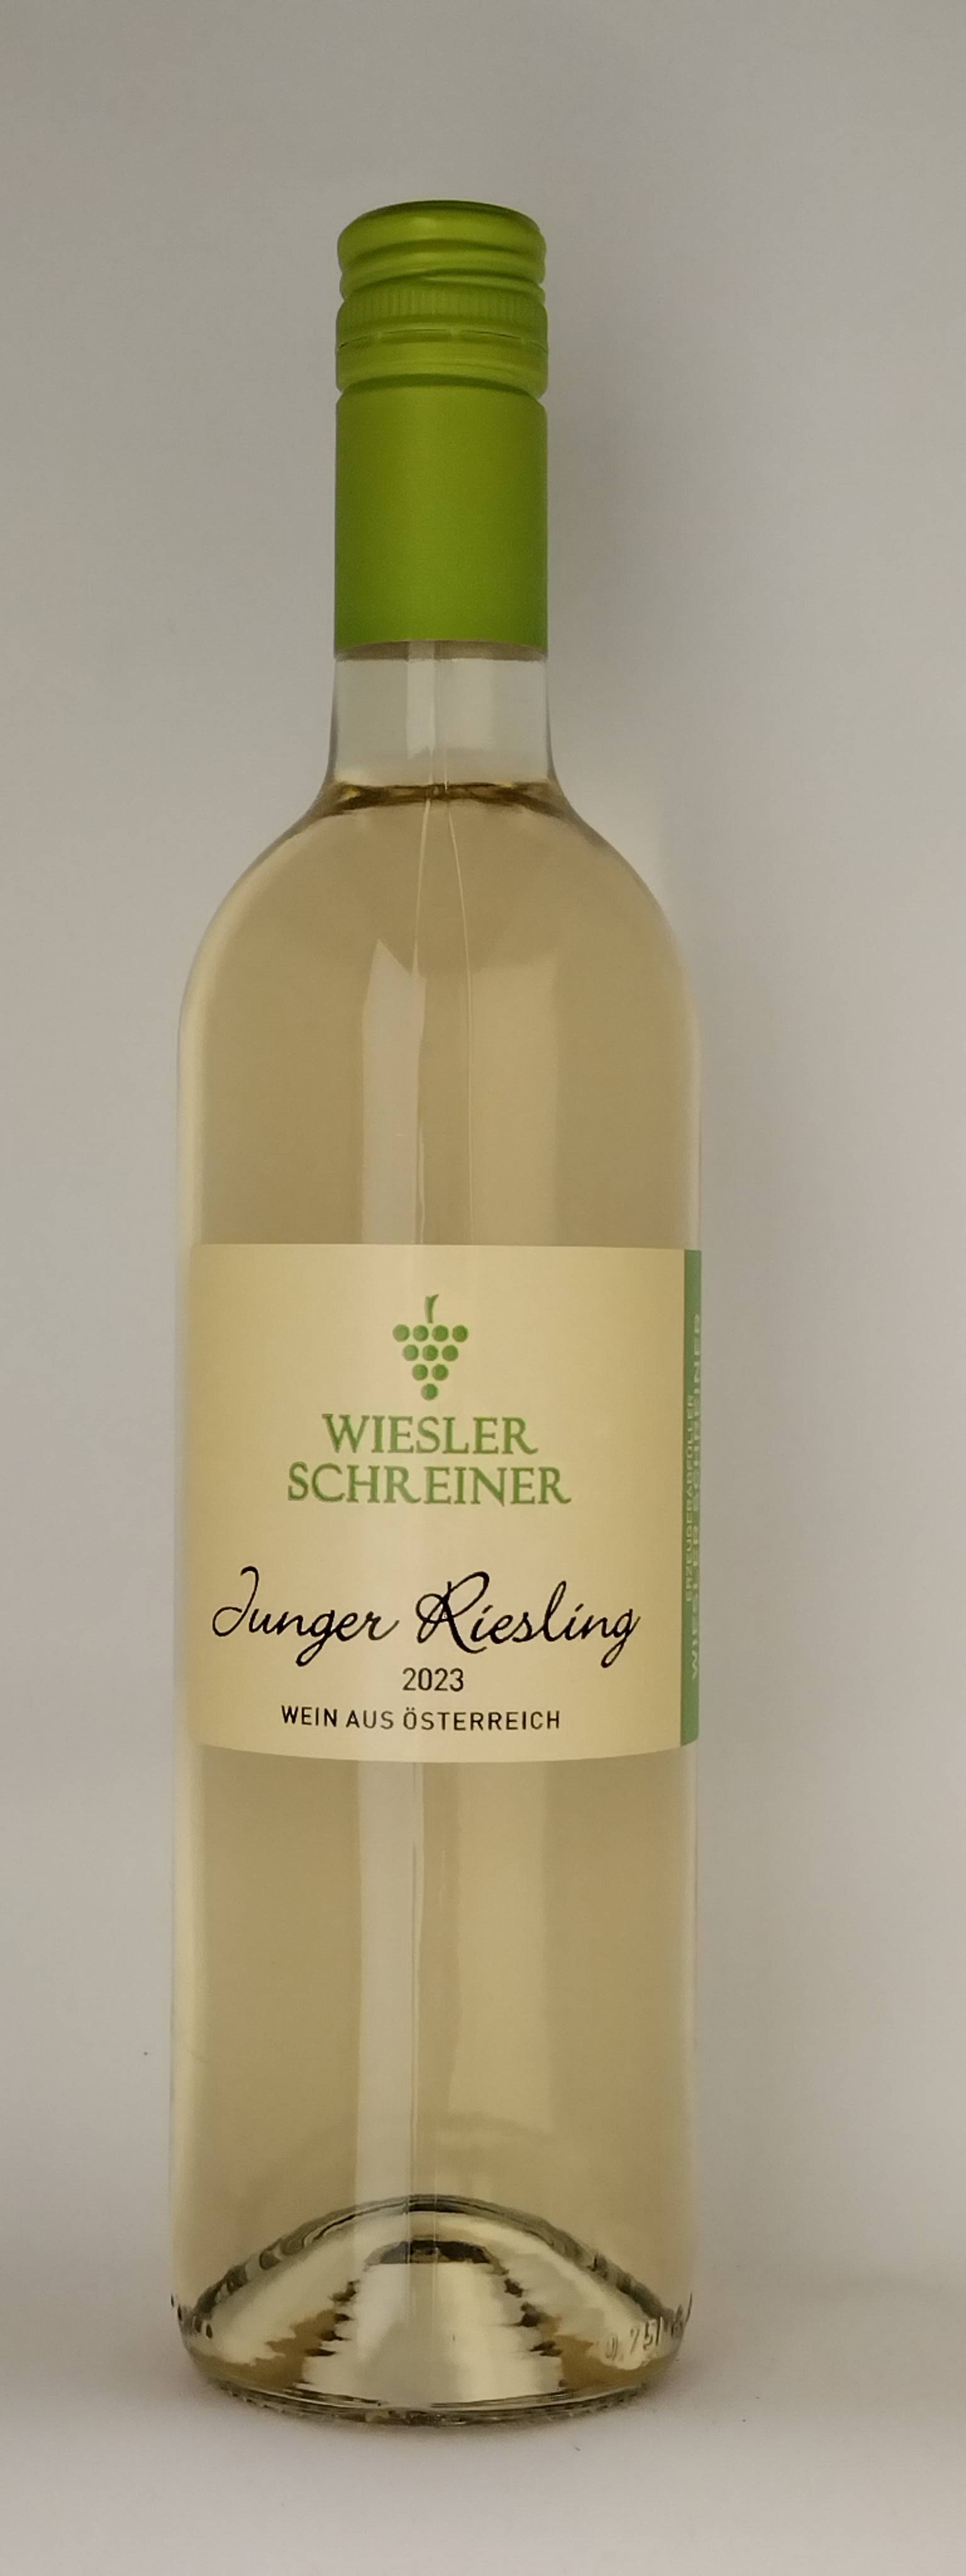 Vinothek Eisenberg Junger Riesling 2023 Wiesler-Schreiner